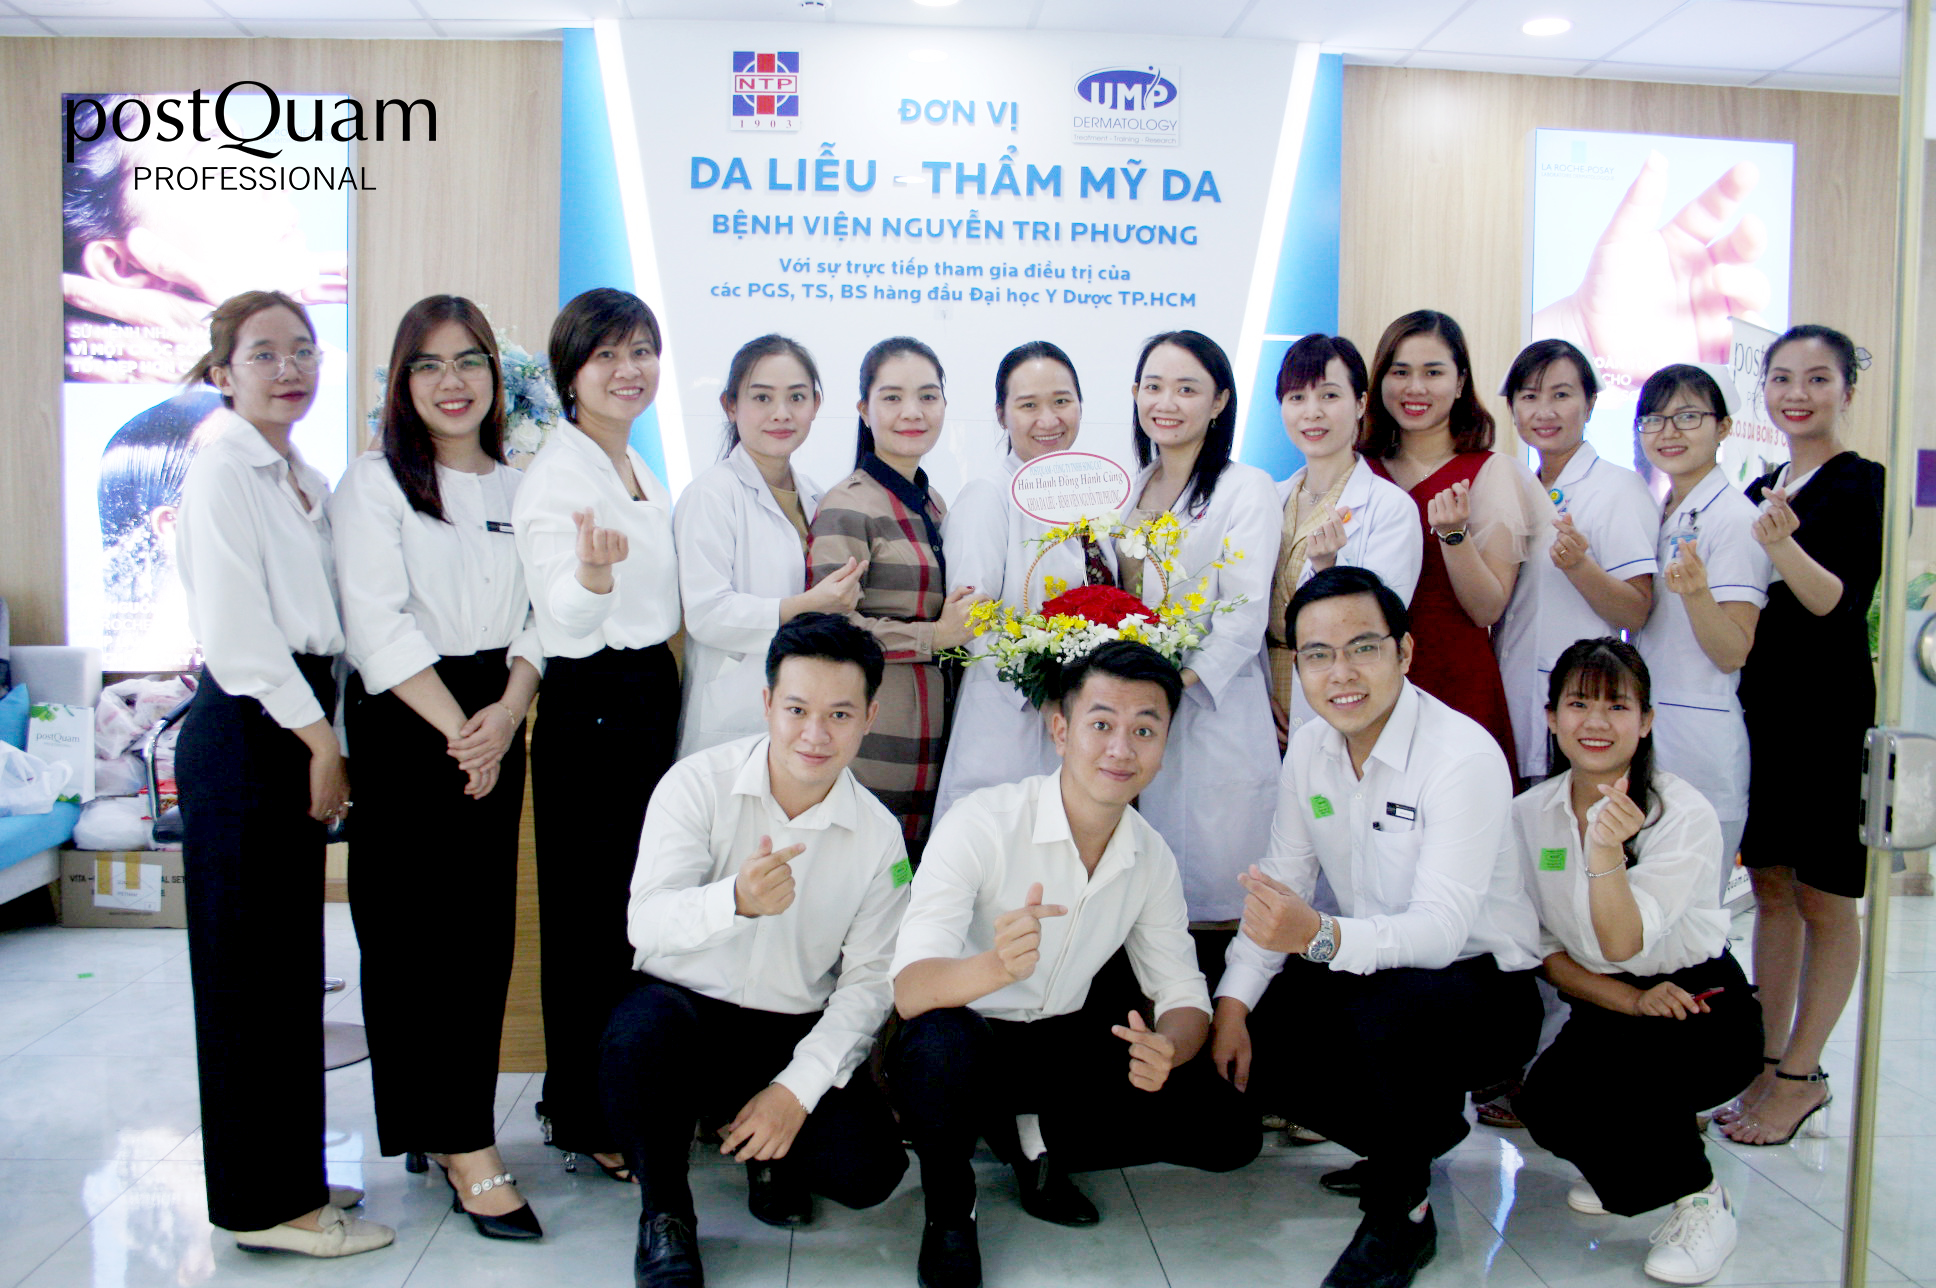 postQuam đồng hành cùng Khoa Da liễu – Thẩm mỹ da Bệnh viện Nguyễn Tri Phương